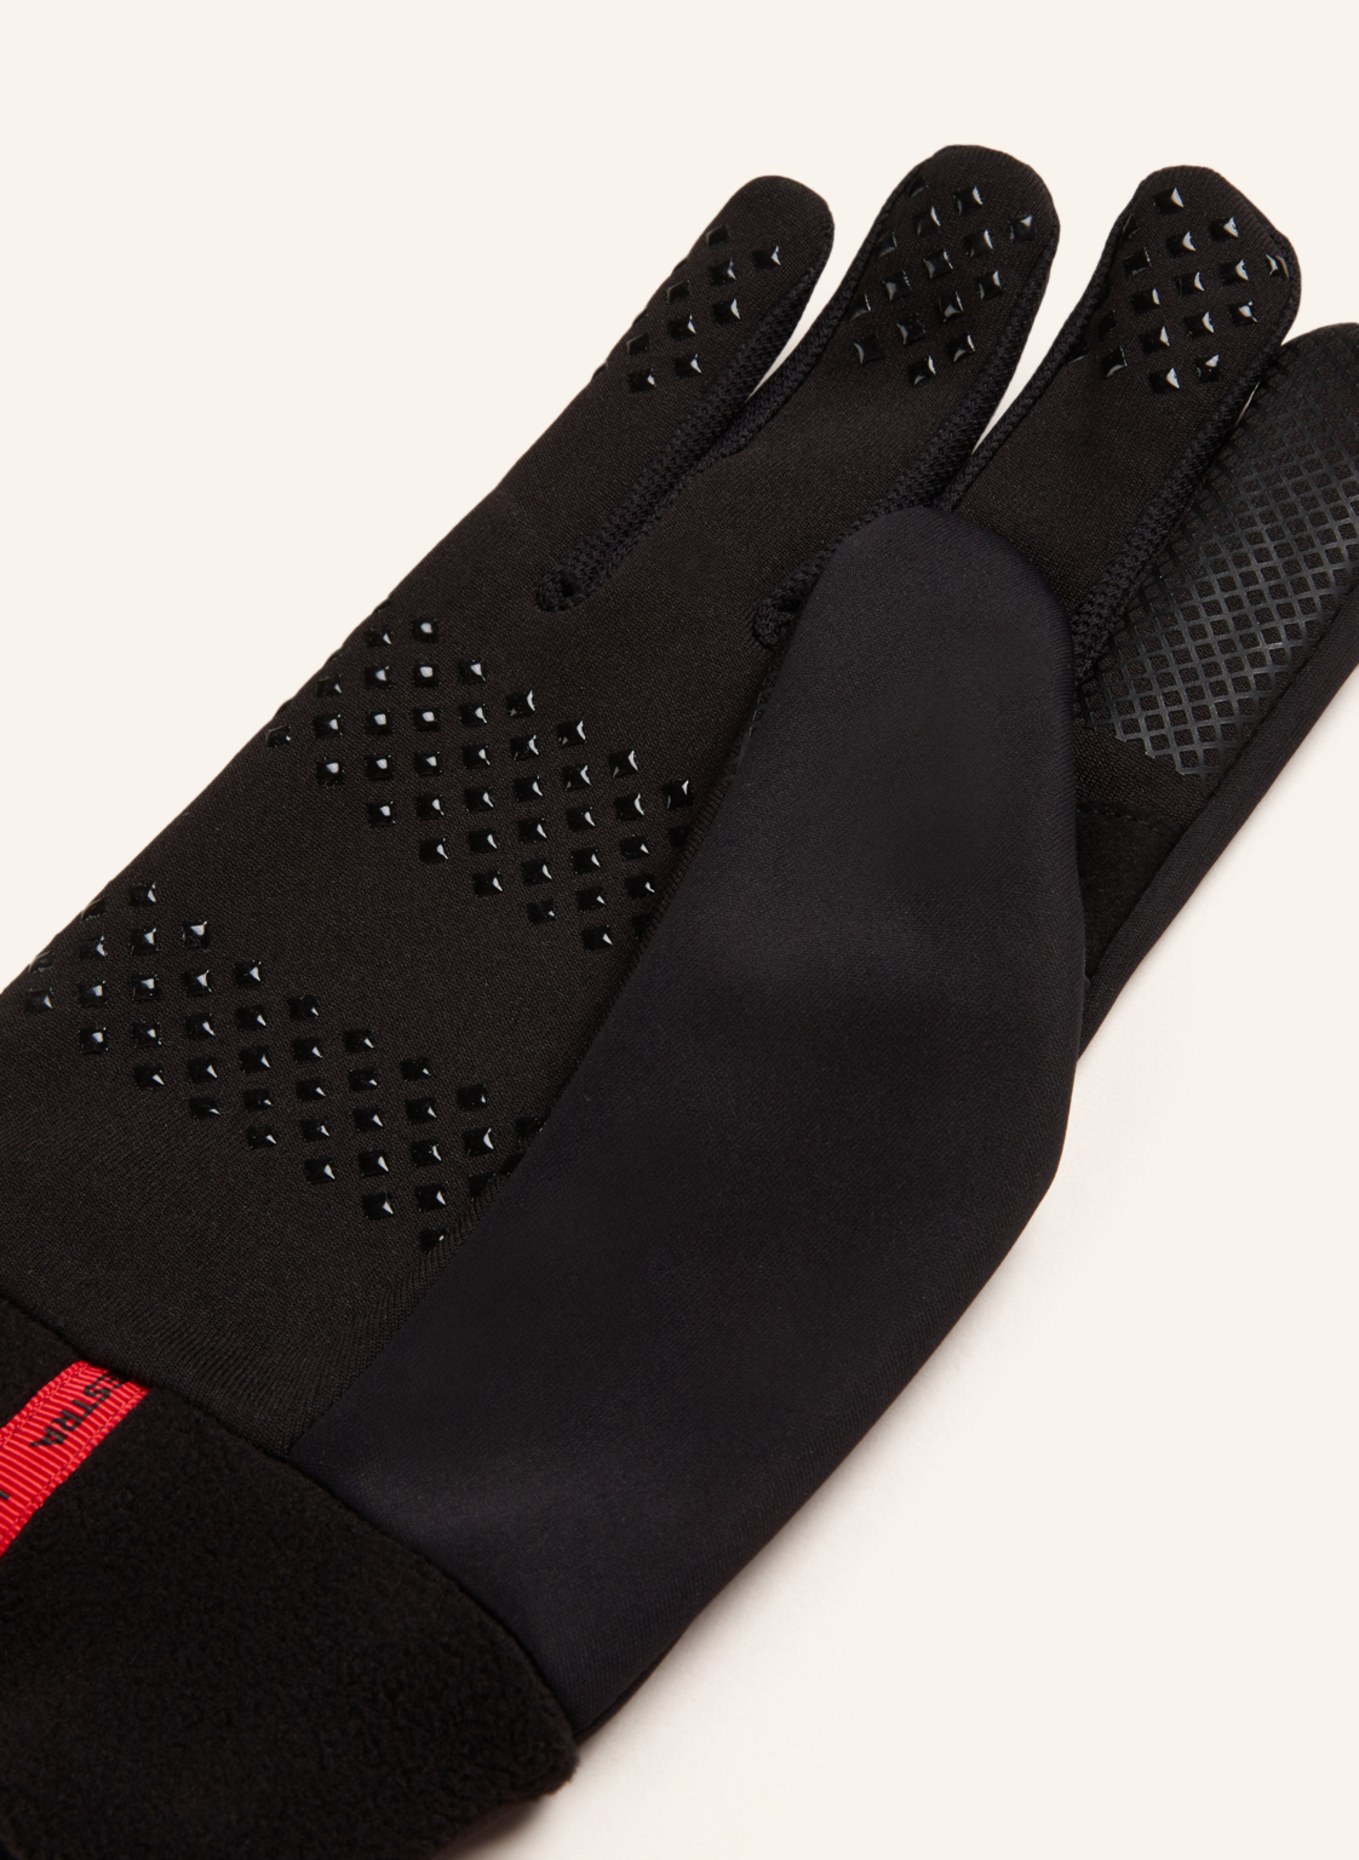 HESTRA Multisport-Handschuhe WINDSHIELD LINER mit Touchscreen-Funktion in  schwarz | Handschuhe